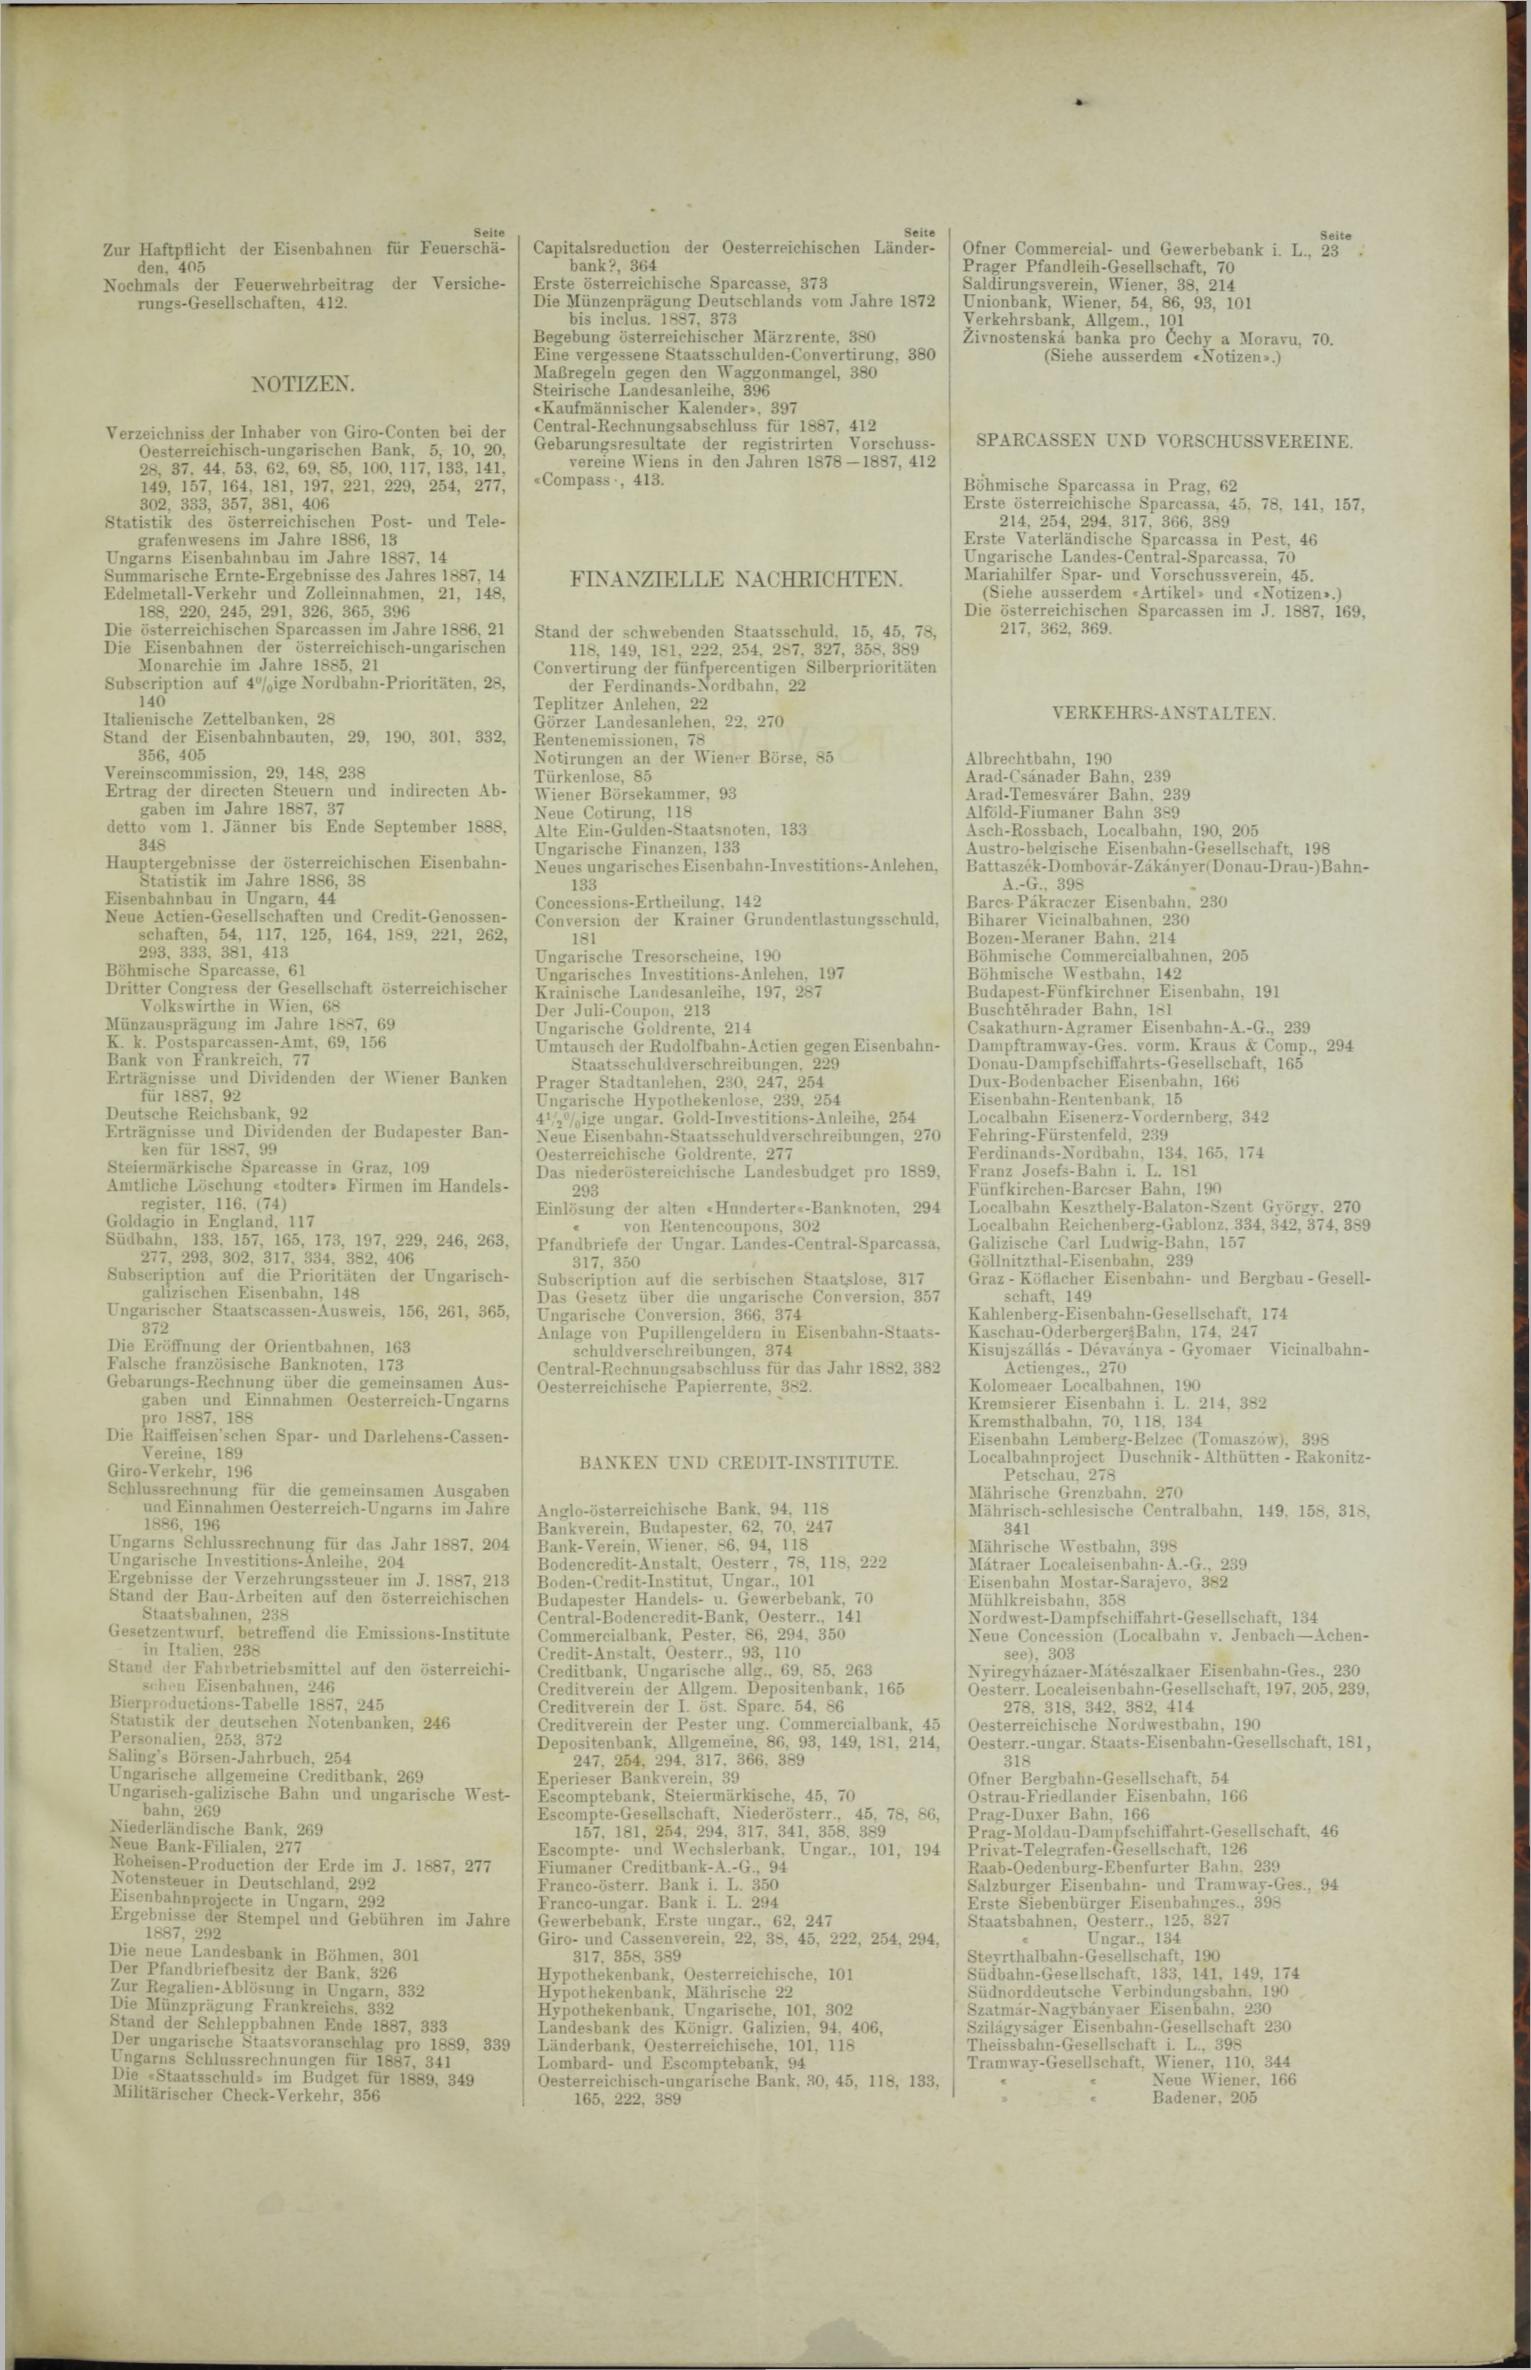 Der Tresor 23.02.1888 - Seite 11